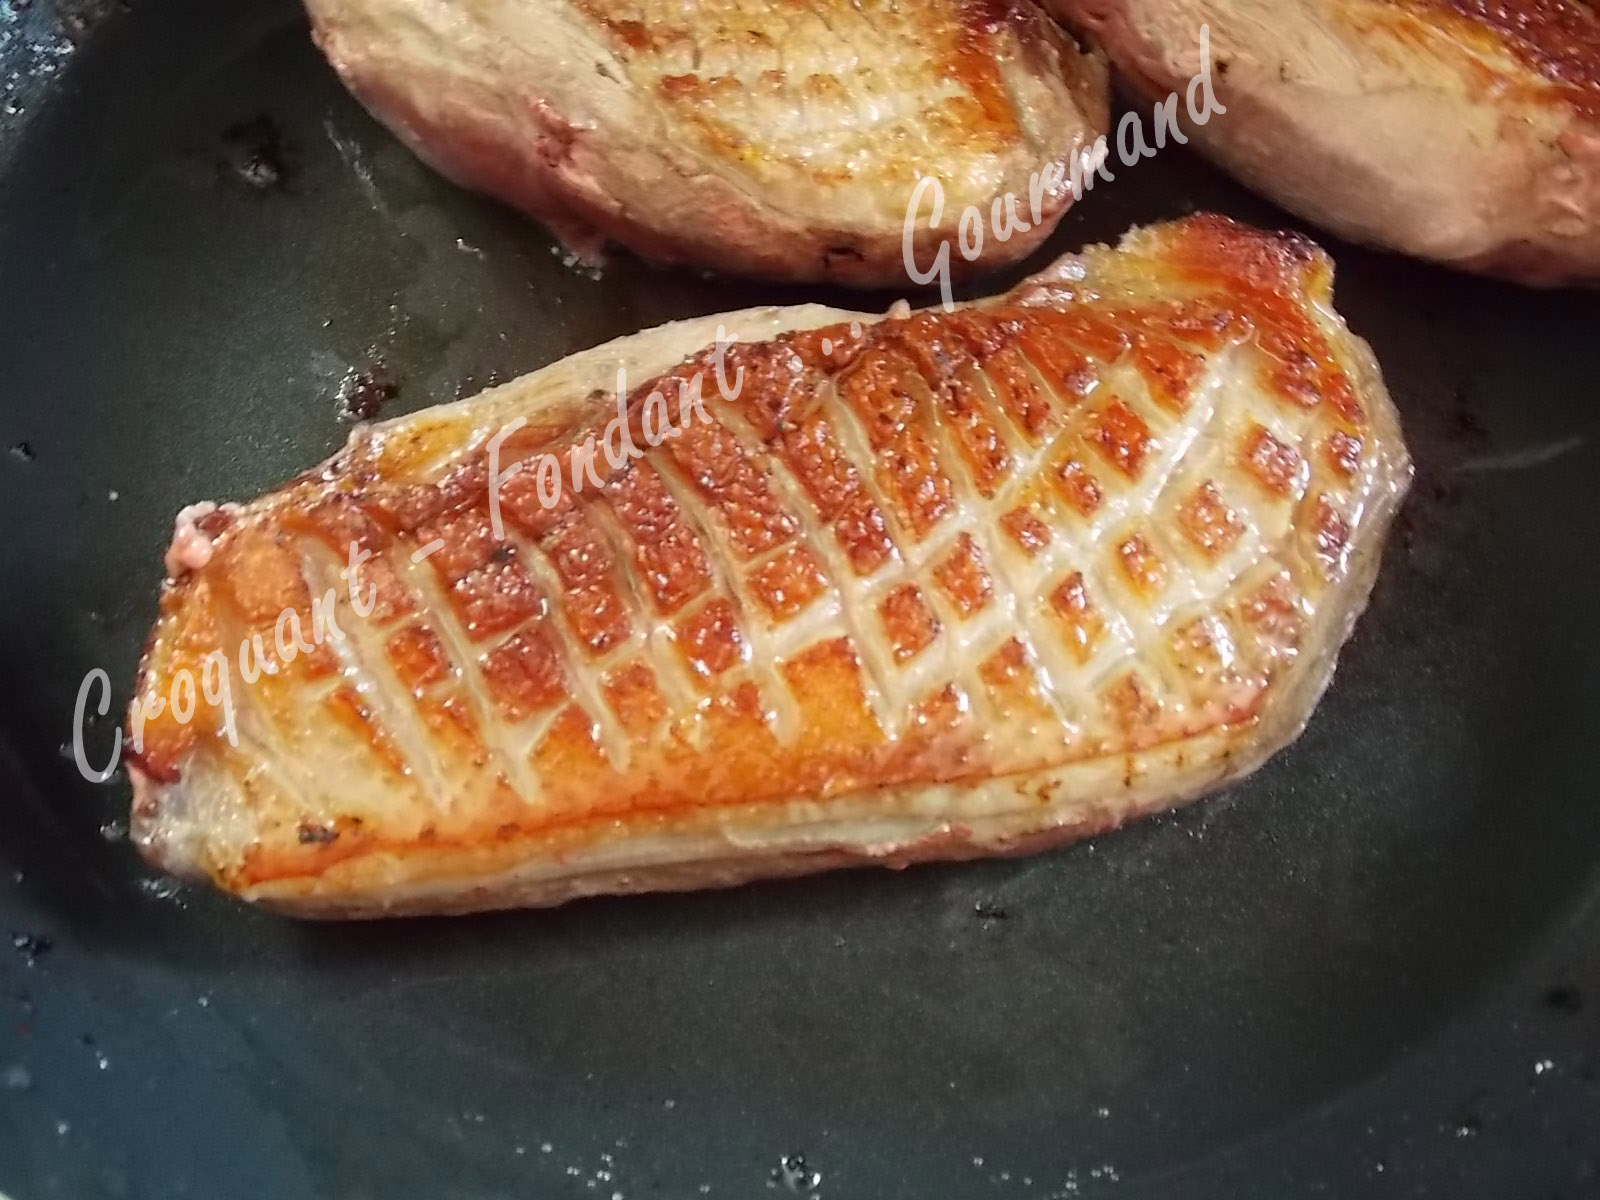 Magret de canard à l'orange cuit au BBQ - La gastronomie espagnole